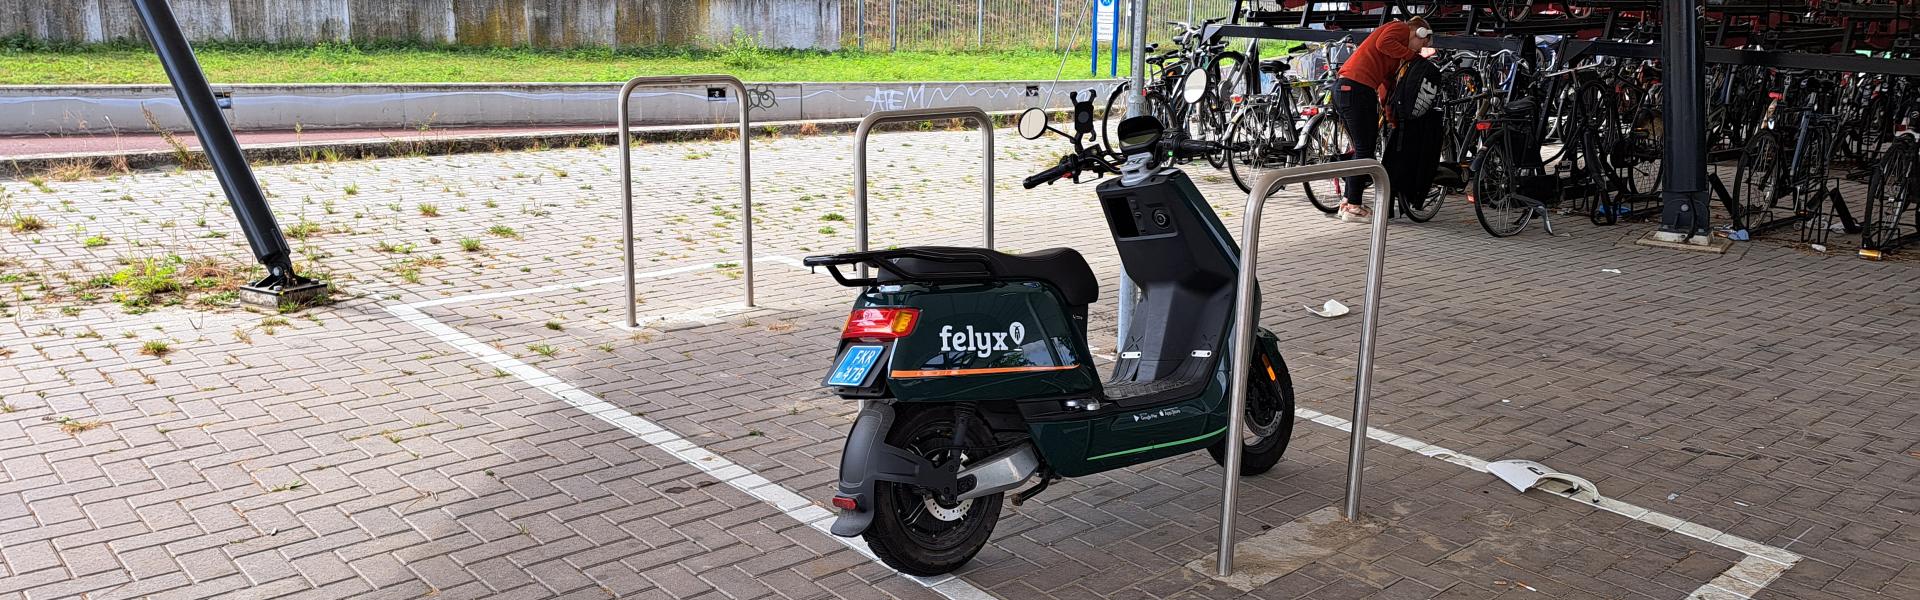 Een netwerk van compacte buurthubs voor deelmobiliteit – de eerste ervaringen in Enschede